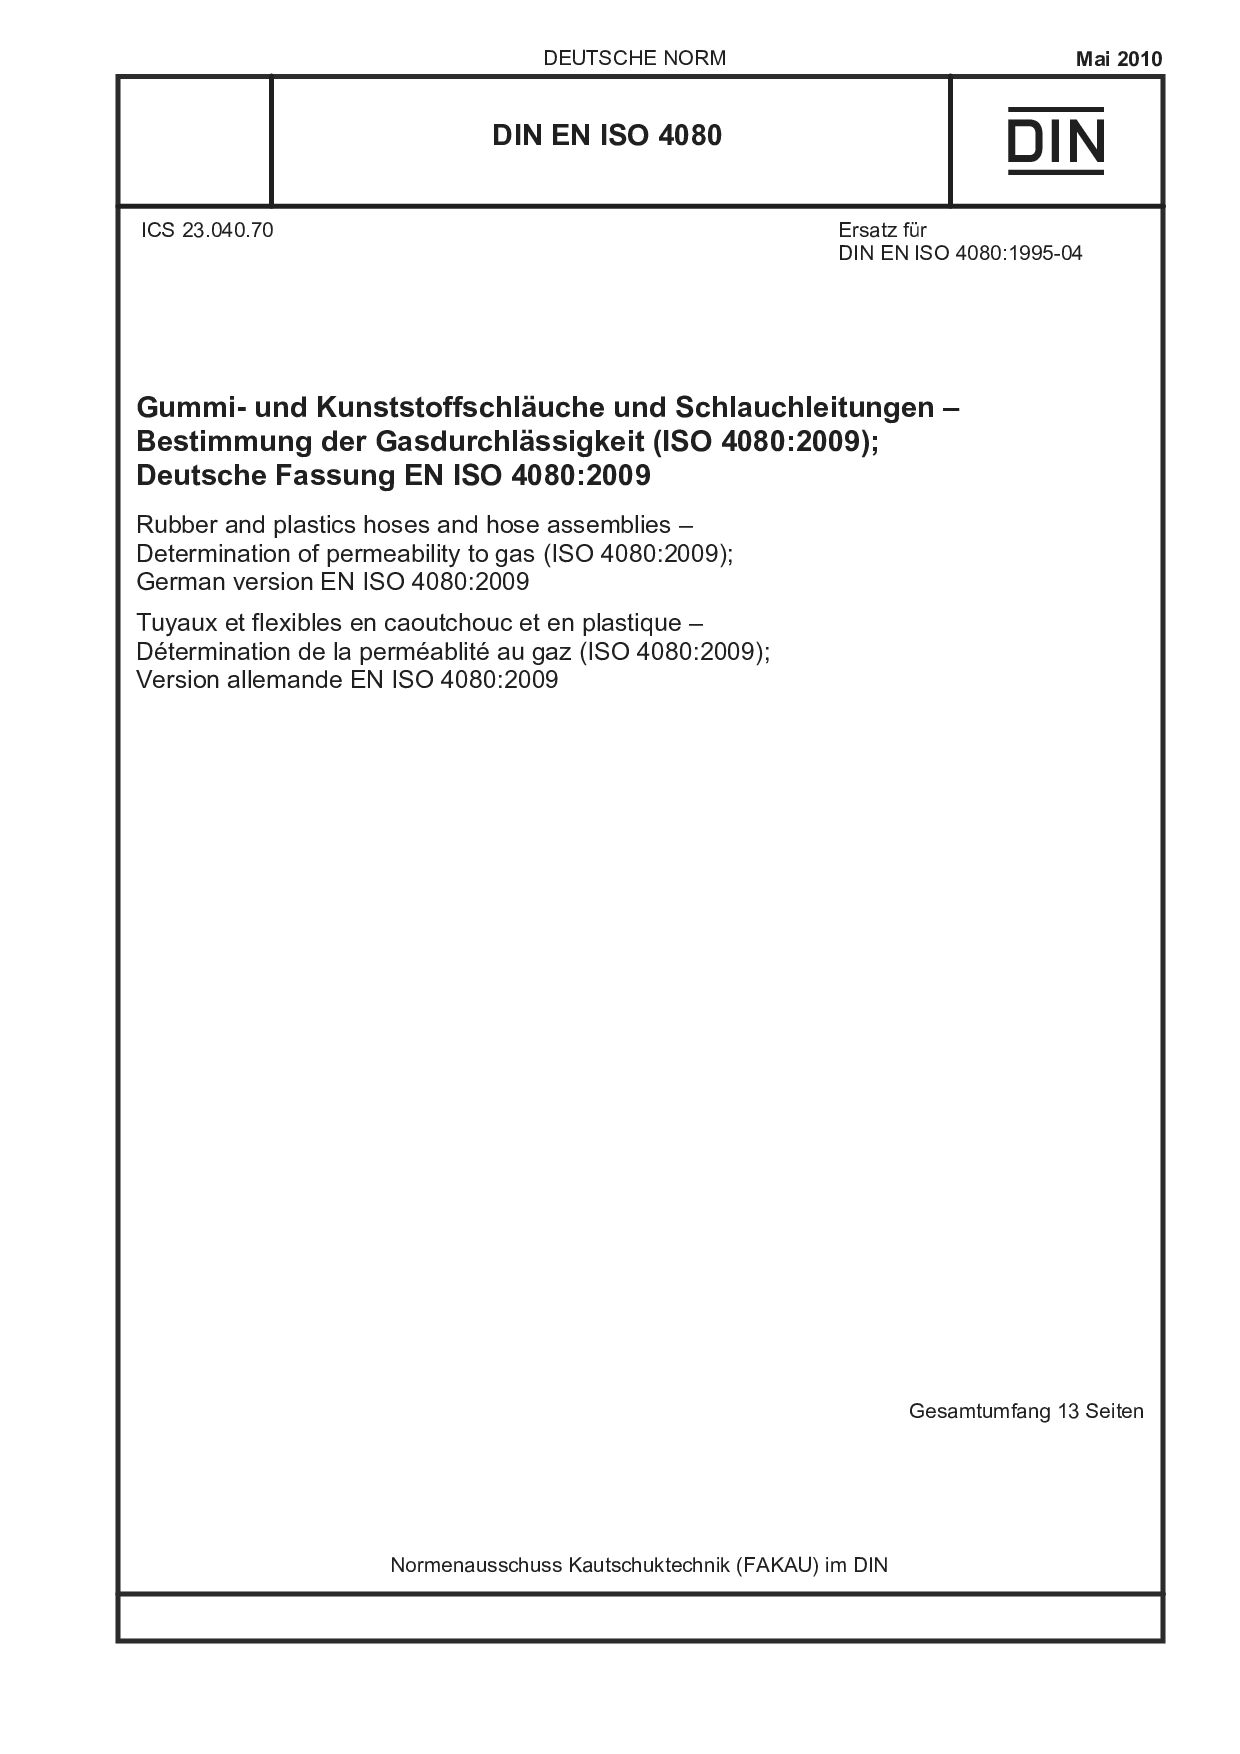 DIN EN ISO 4080:2010封面图